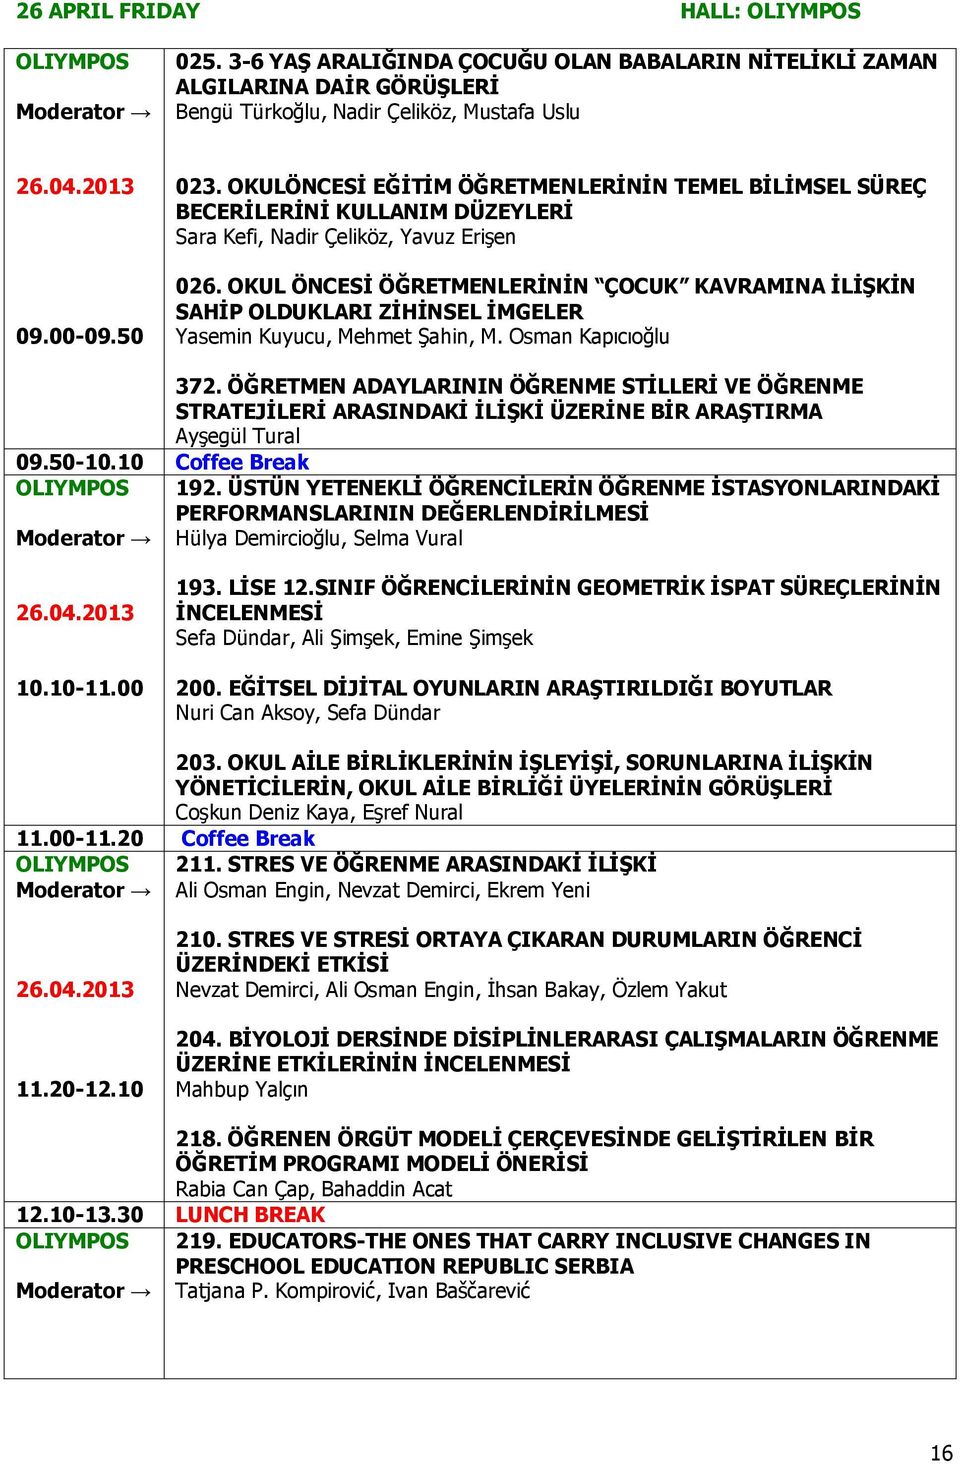 OKUL ÖNCESĠ ÖĞRETMENLERĠNĠN ÇOCUK KAVRAMINA ĠLĠġKĠN SAHĠP OLDUKLARI ZĠHĠNSEL ĠMGELER Yasemin Kuyucu, Mehmet Şahin, M. Osman Kapıcıoğlu 09.50-10.10 Coffee Break 372.